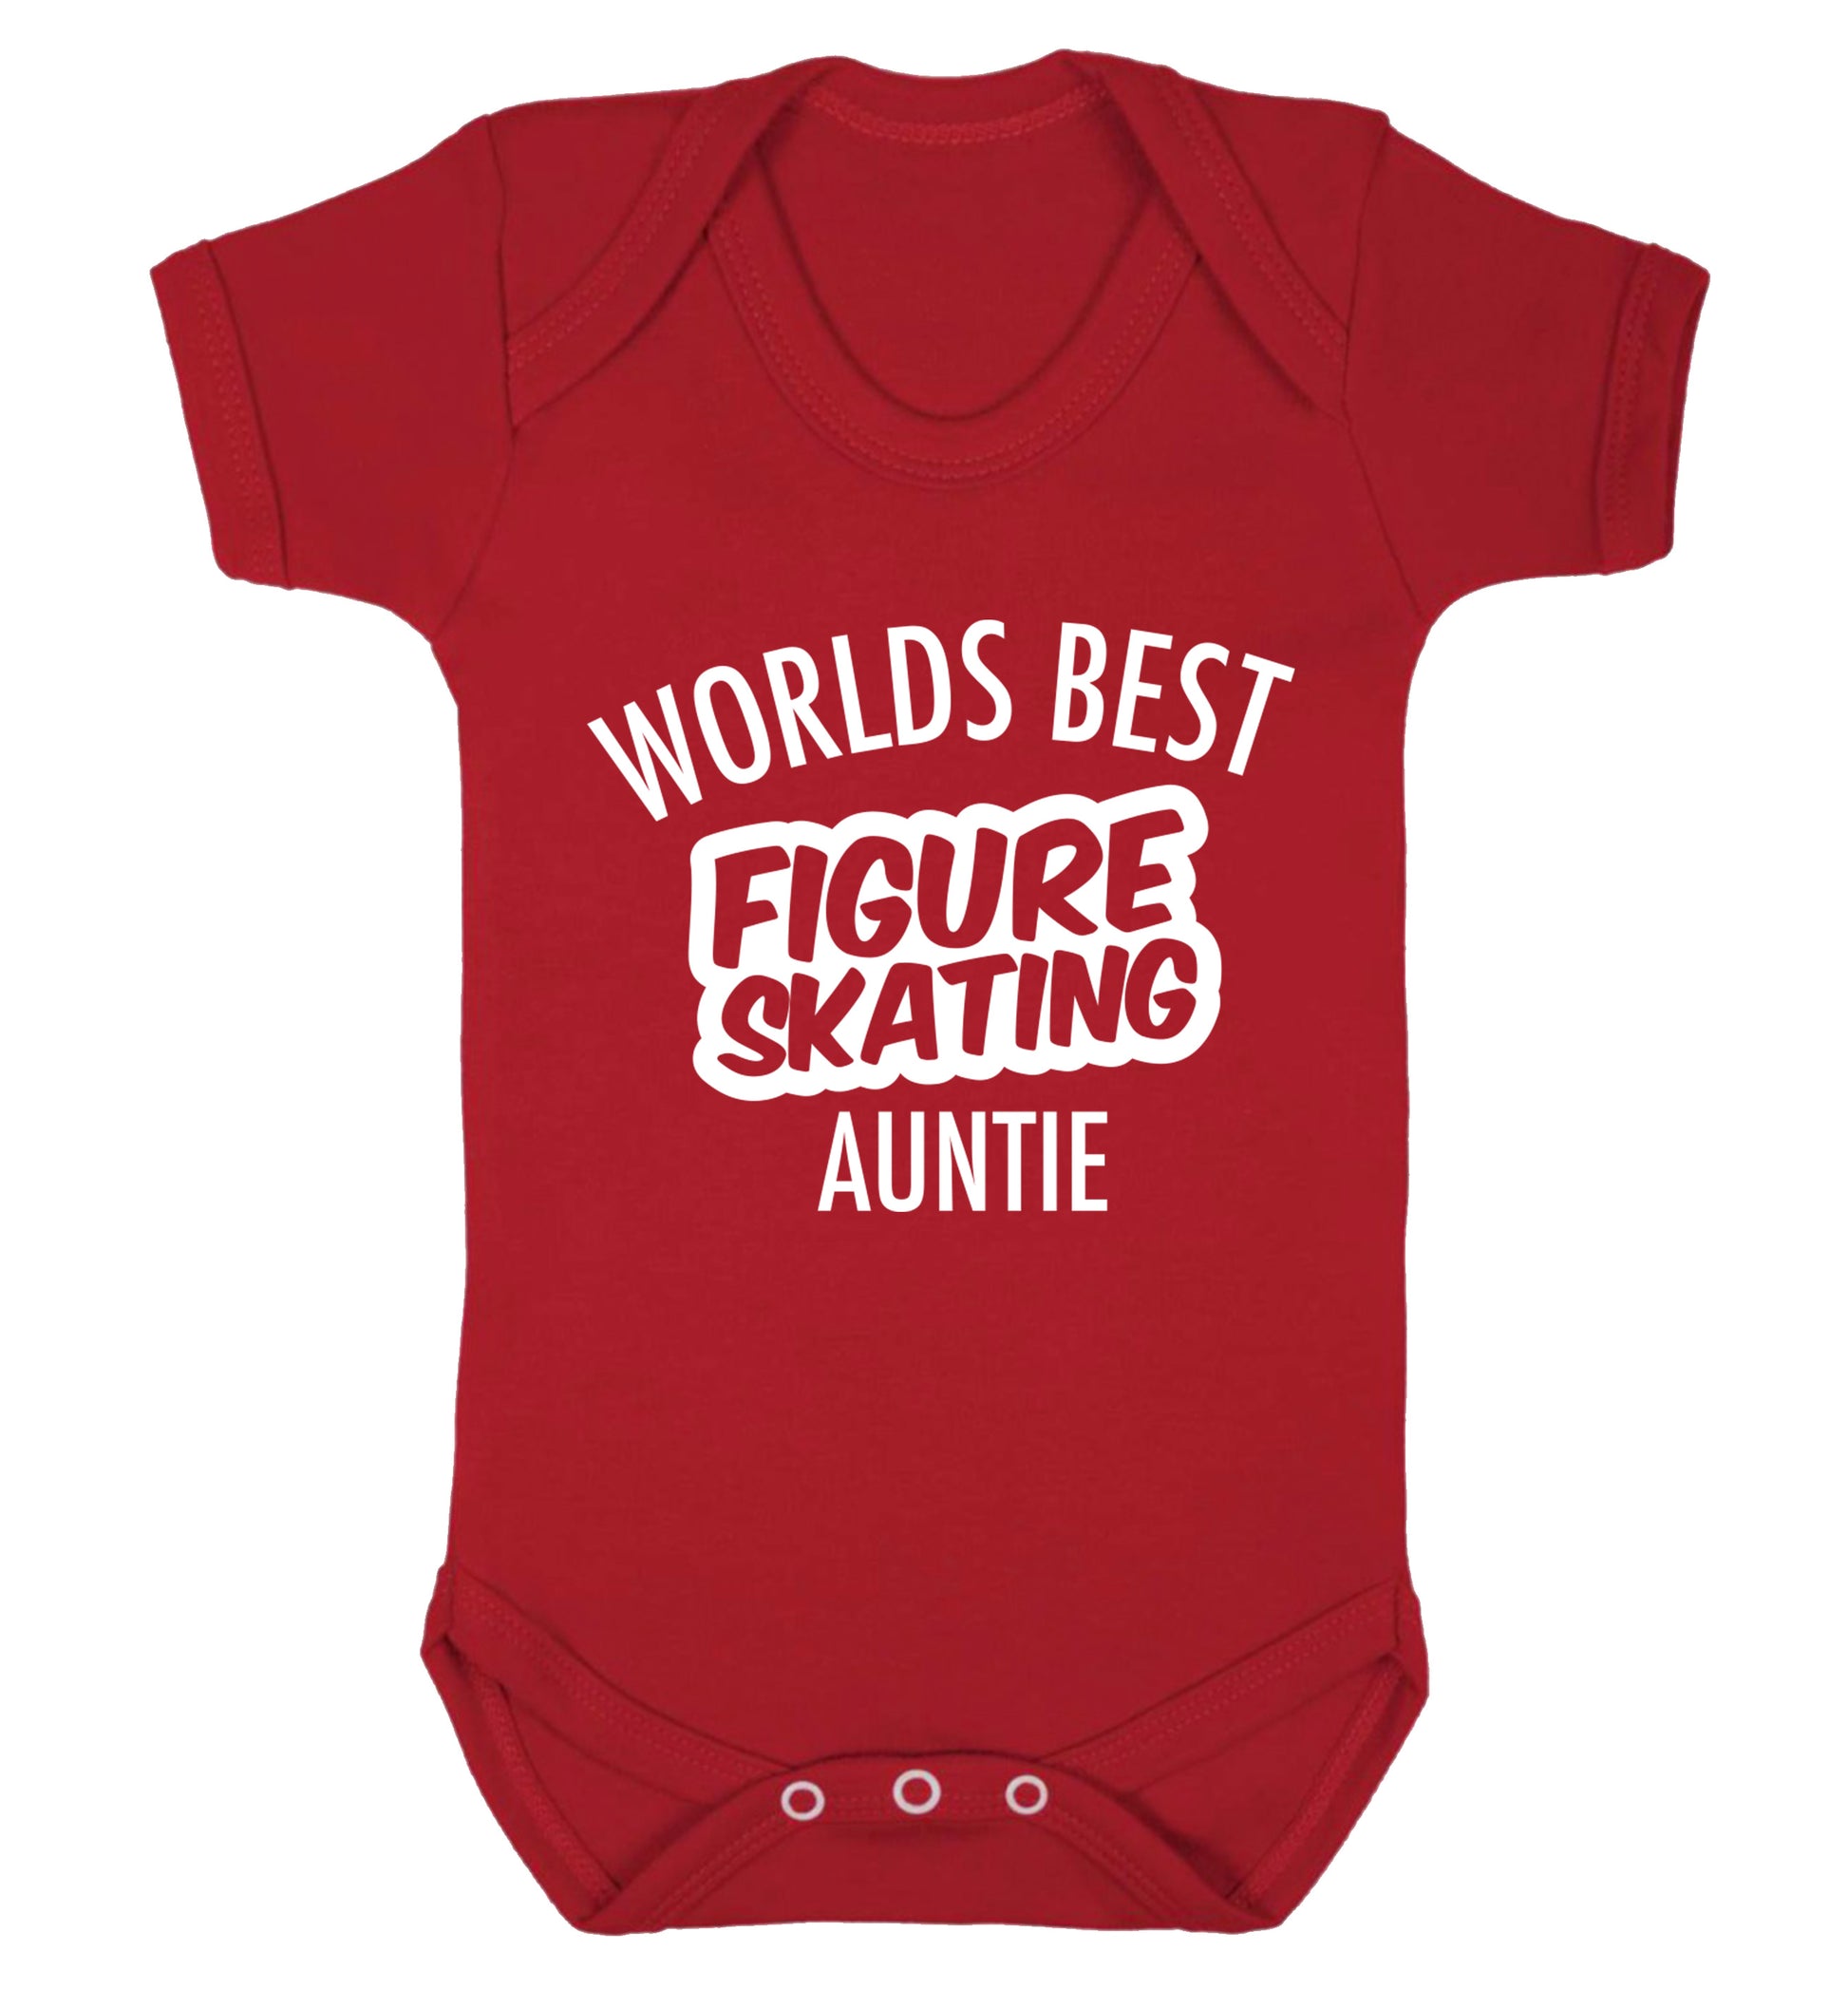 Worlds best figure skating auntie Baby Vest red 18-24 months